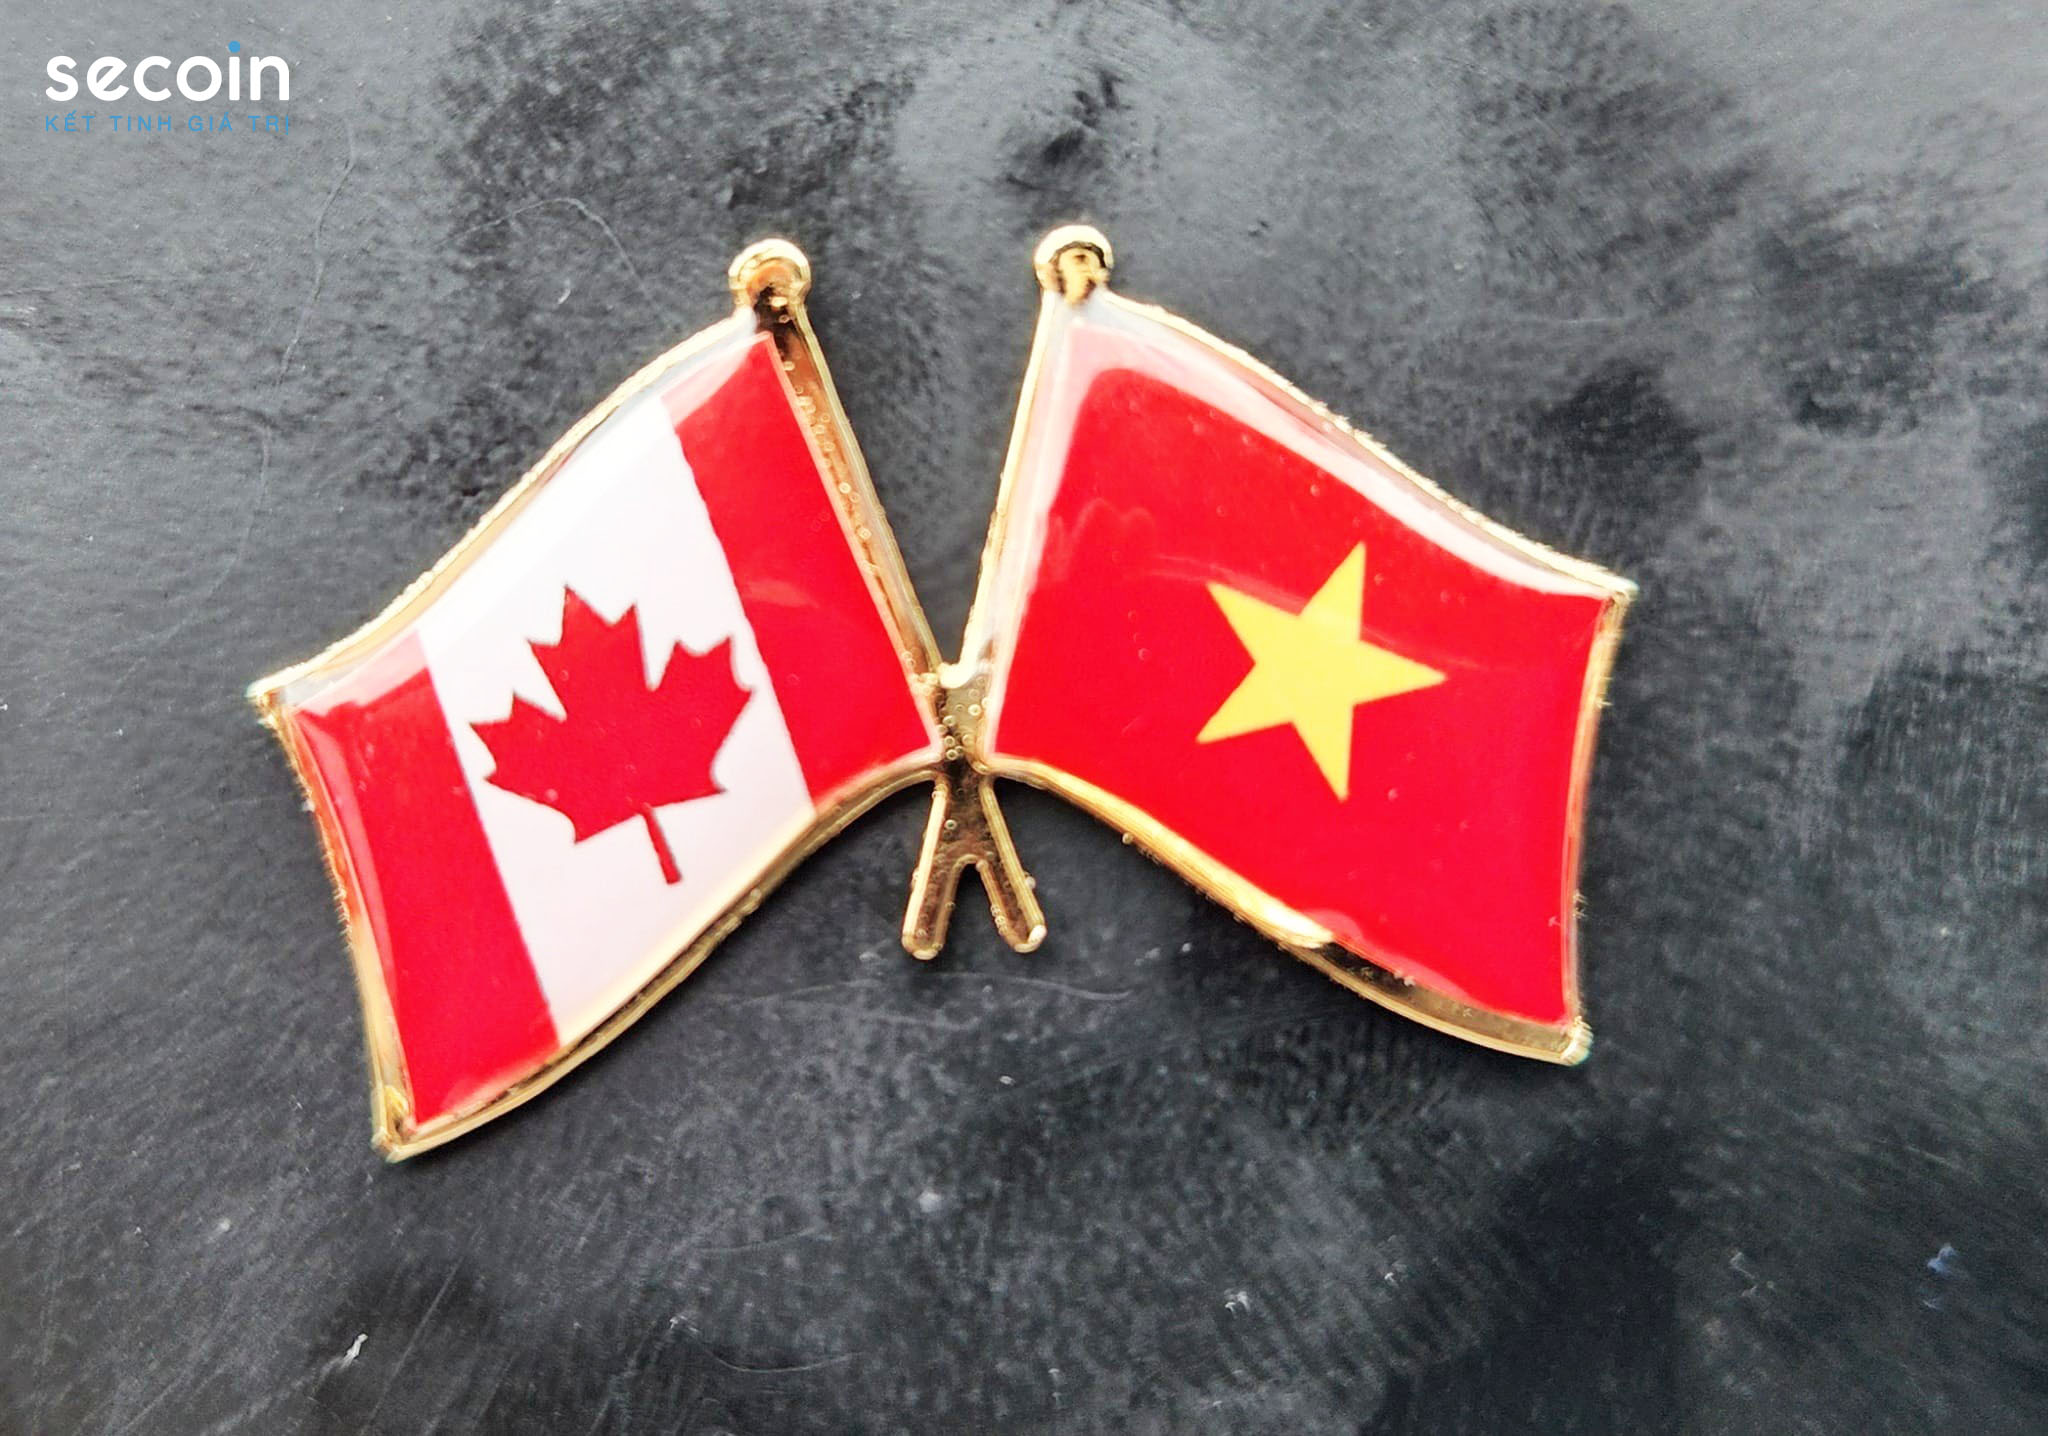 Secoin tham gia đoàn đại biểu TP Hồ Chí Minh thăm và làm việc tại Canada